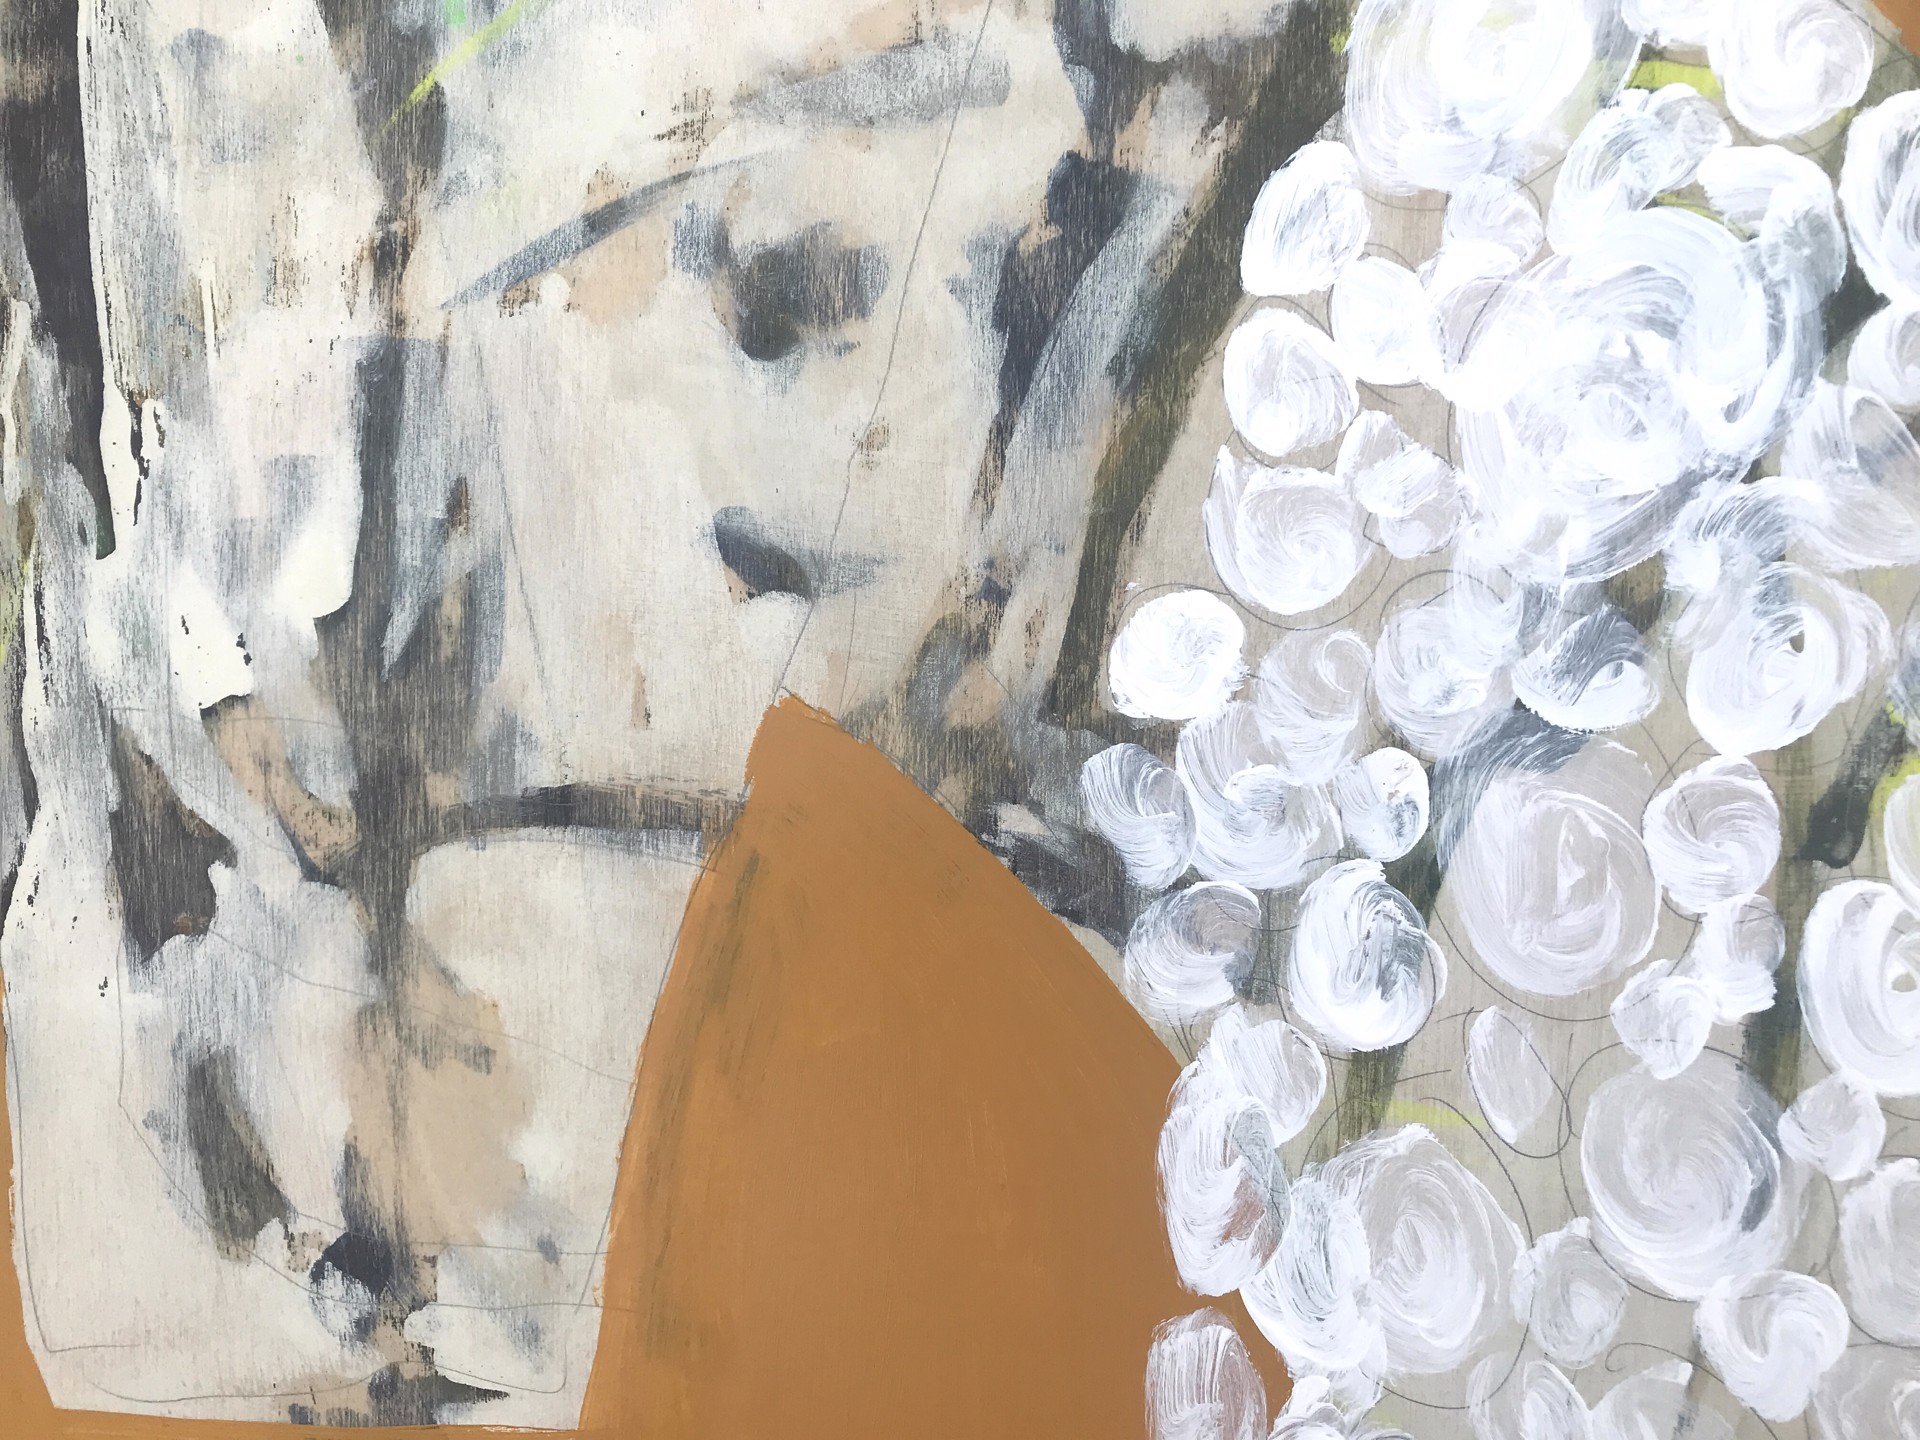 Blanket of White Carnations by Rachael Van Dyke